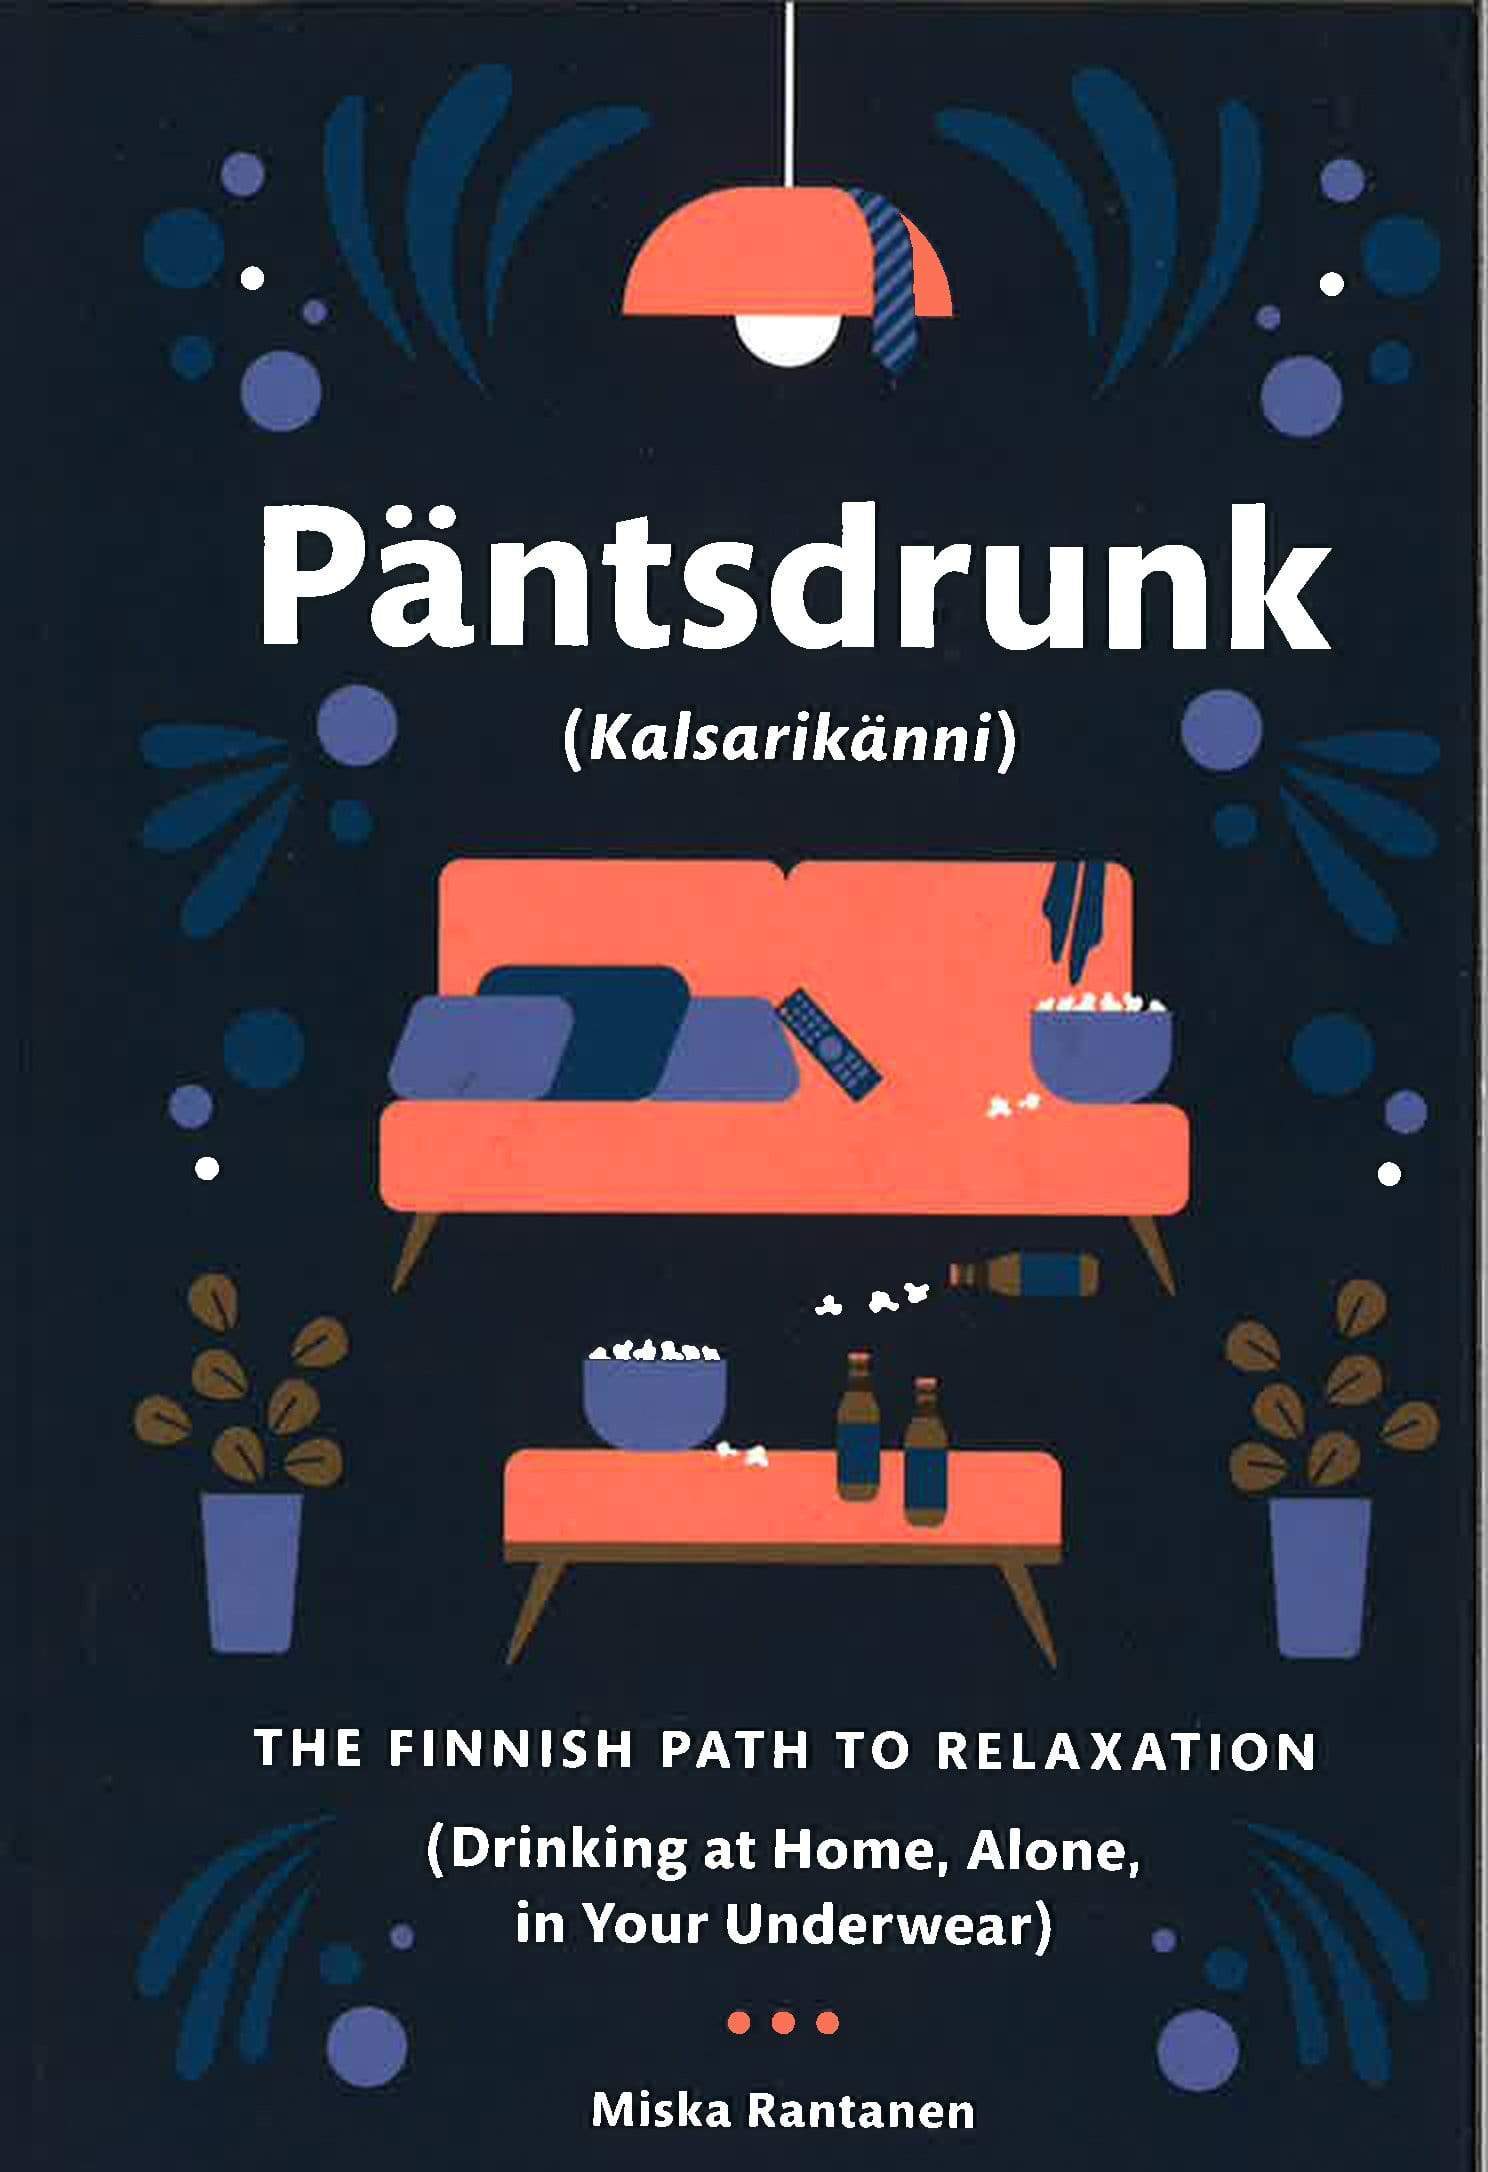 Pantsdrunk: Kalsarikanni - The Finnish Path To Relaxation